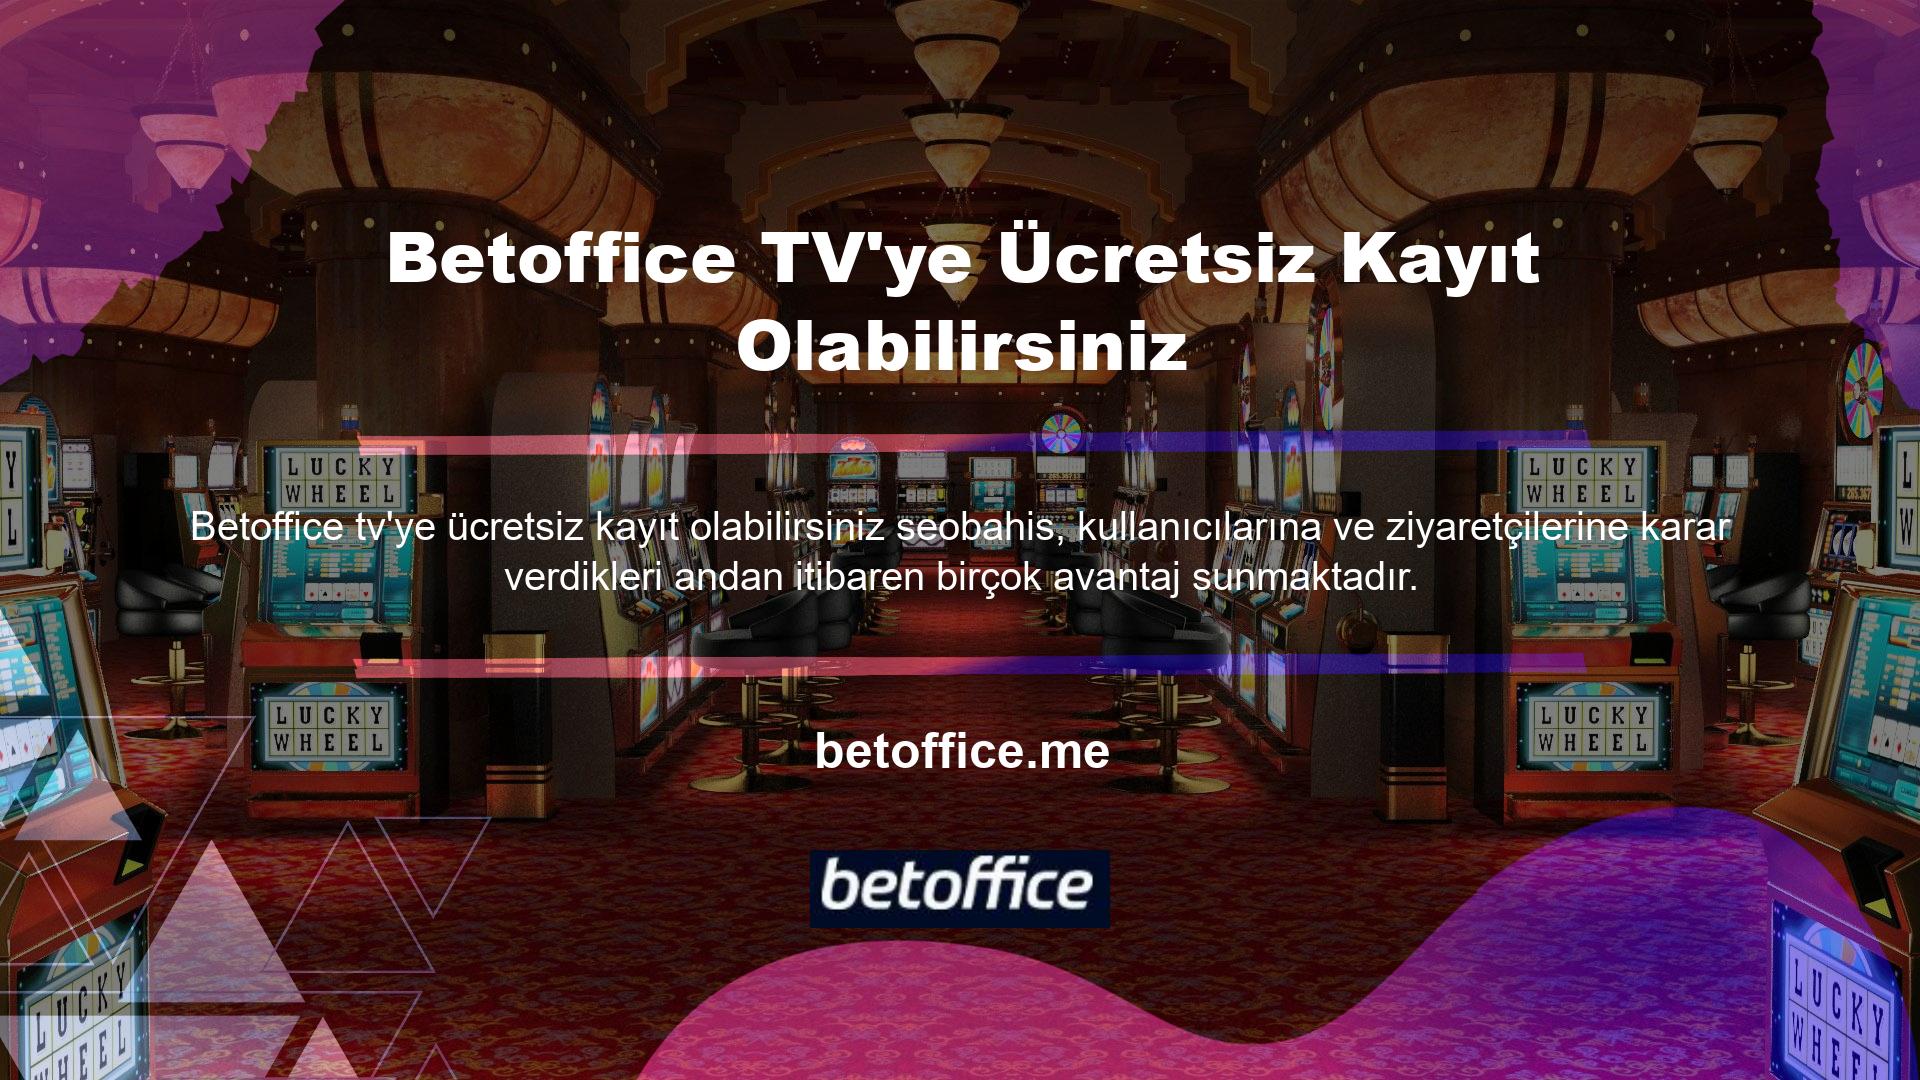 Gördüğünüz gibi avantajlarından biri de Betoffice TV'ye ücretsiz abone olmanızı sağlayan TV özelliğidir